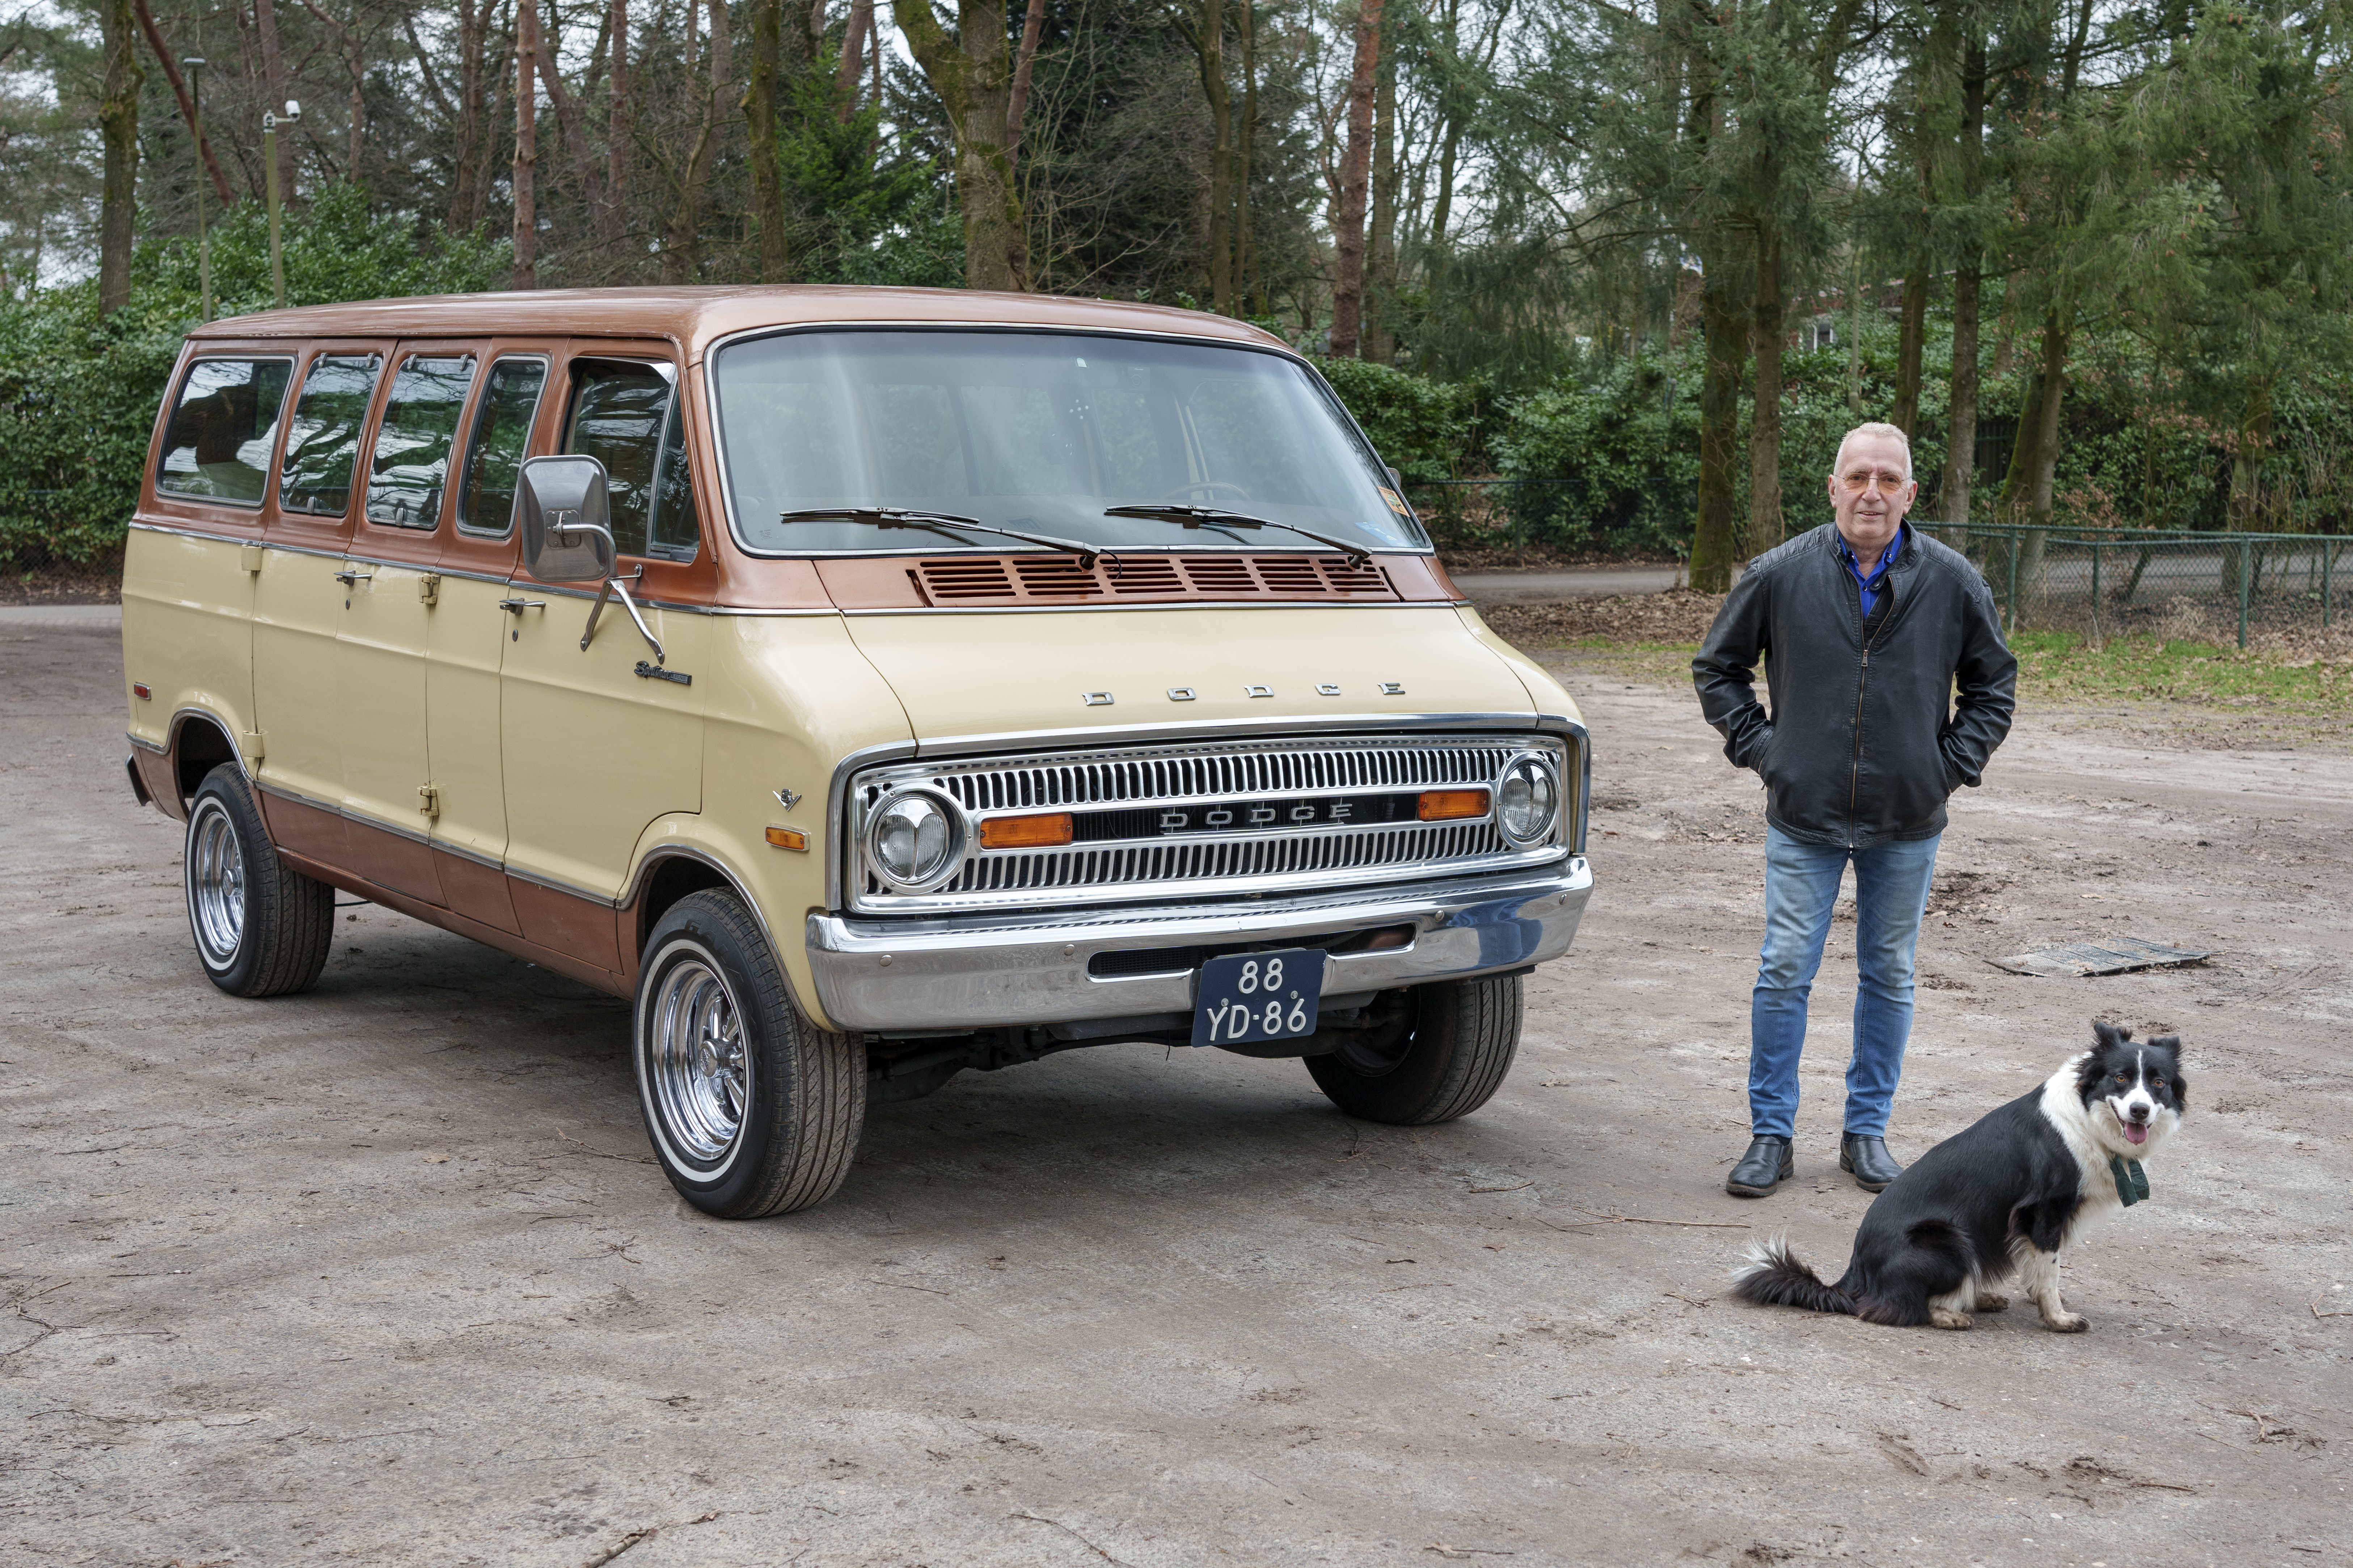 Het Dodge-busje van Vince met 5,9-liter V8 is zijn droom-oldtimer